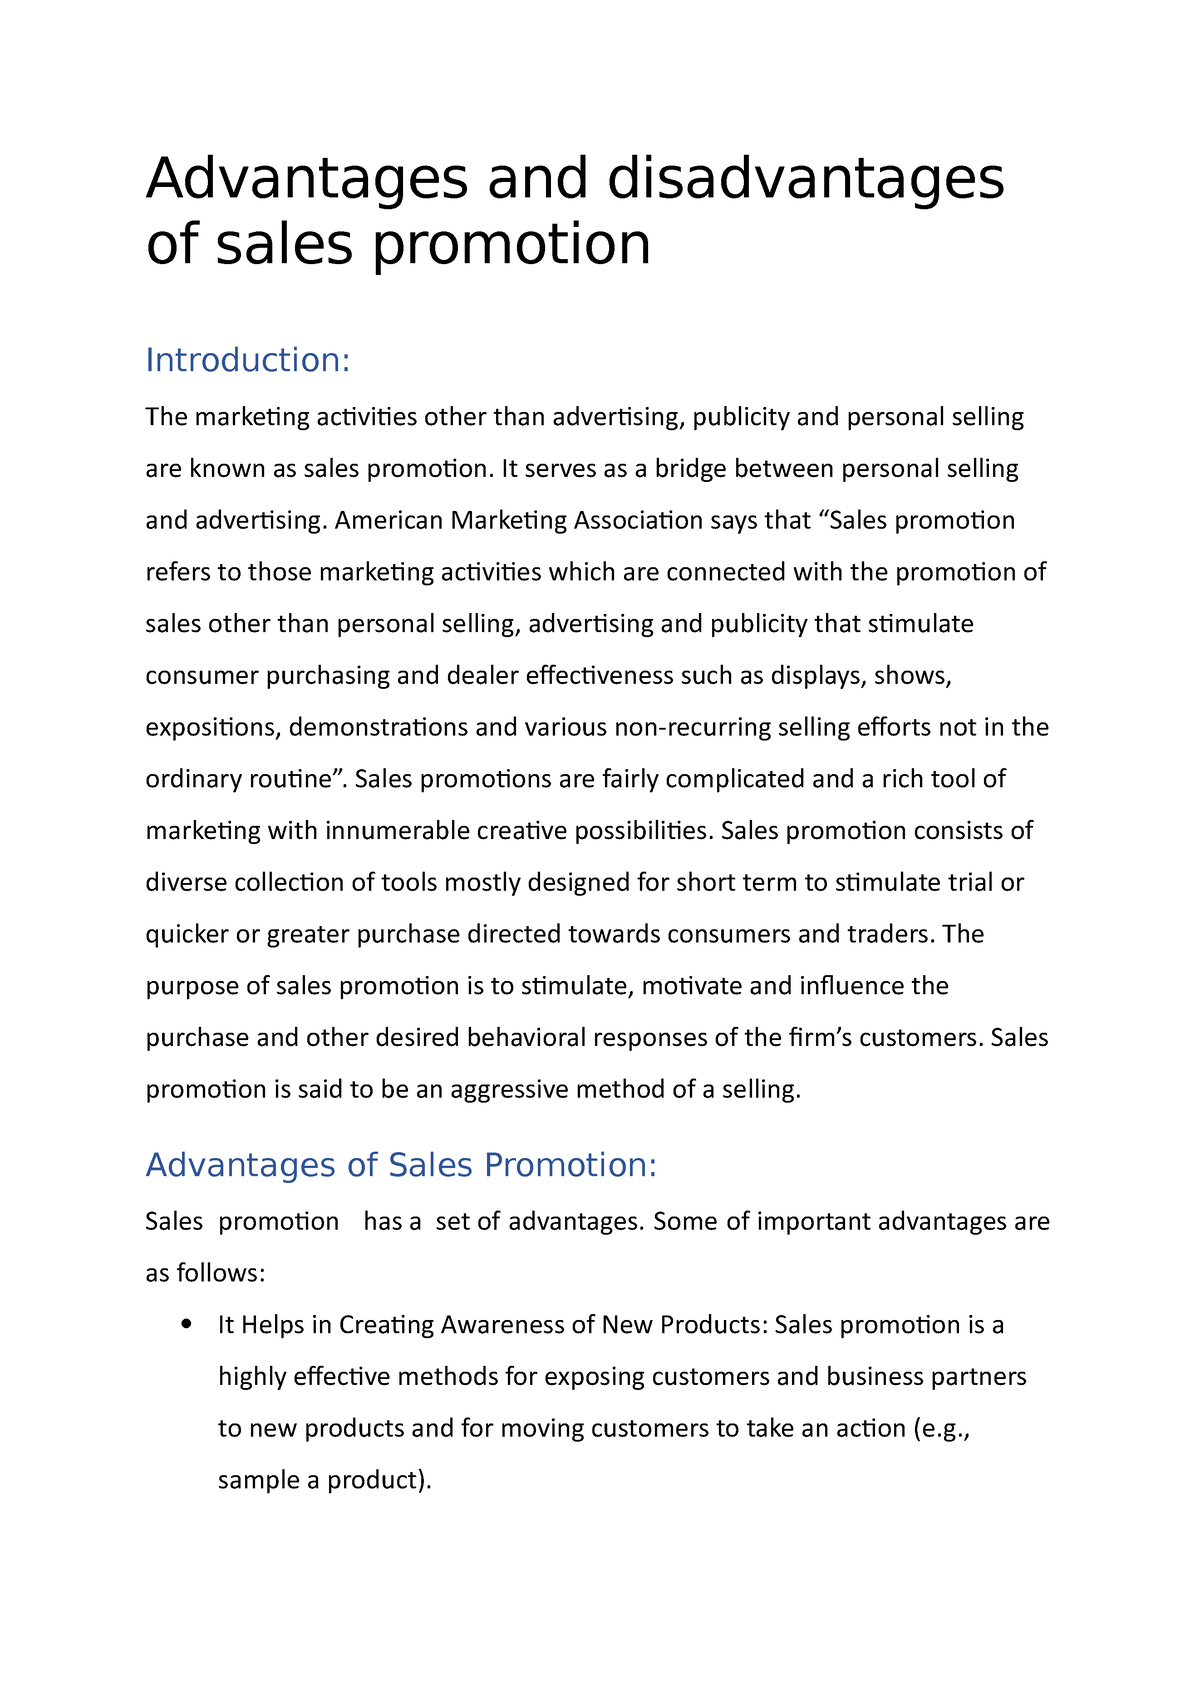 Rebates Sales Promotion Advantages And Disadvantages